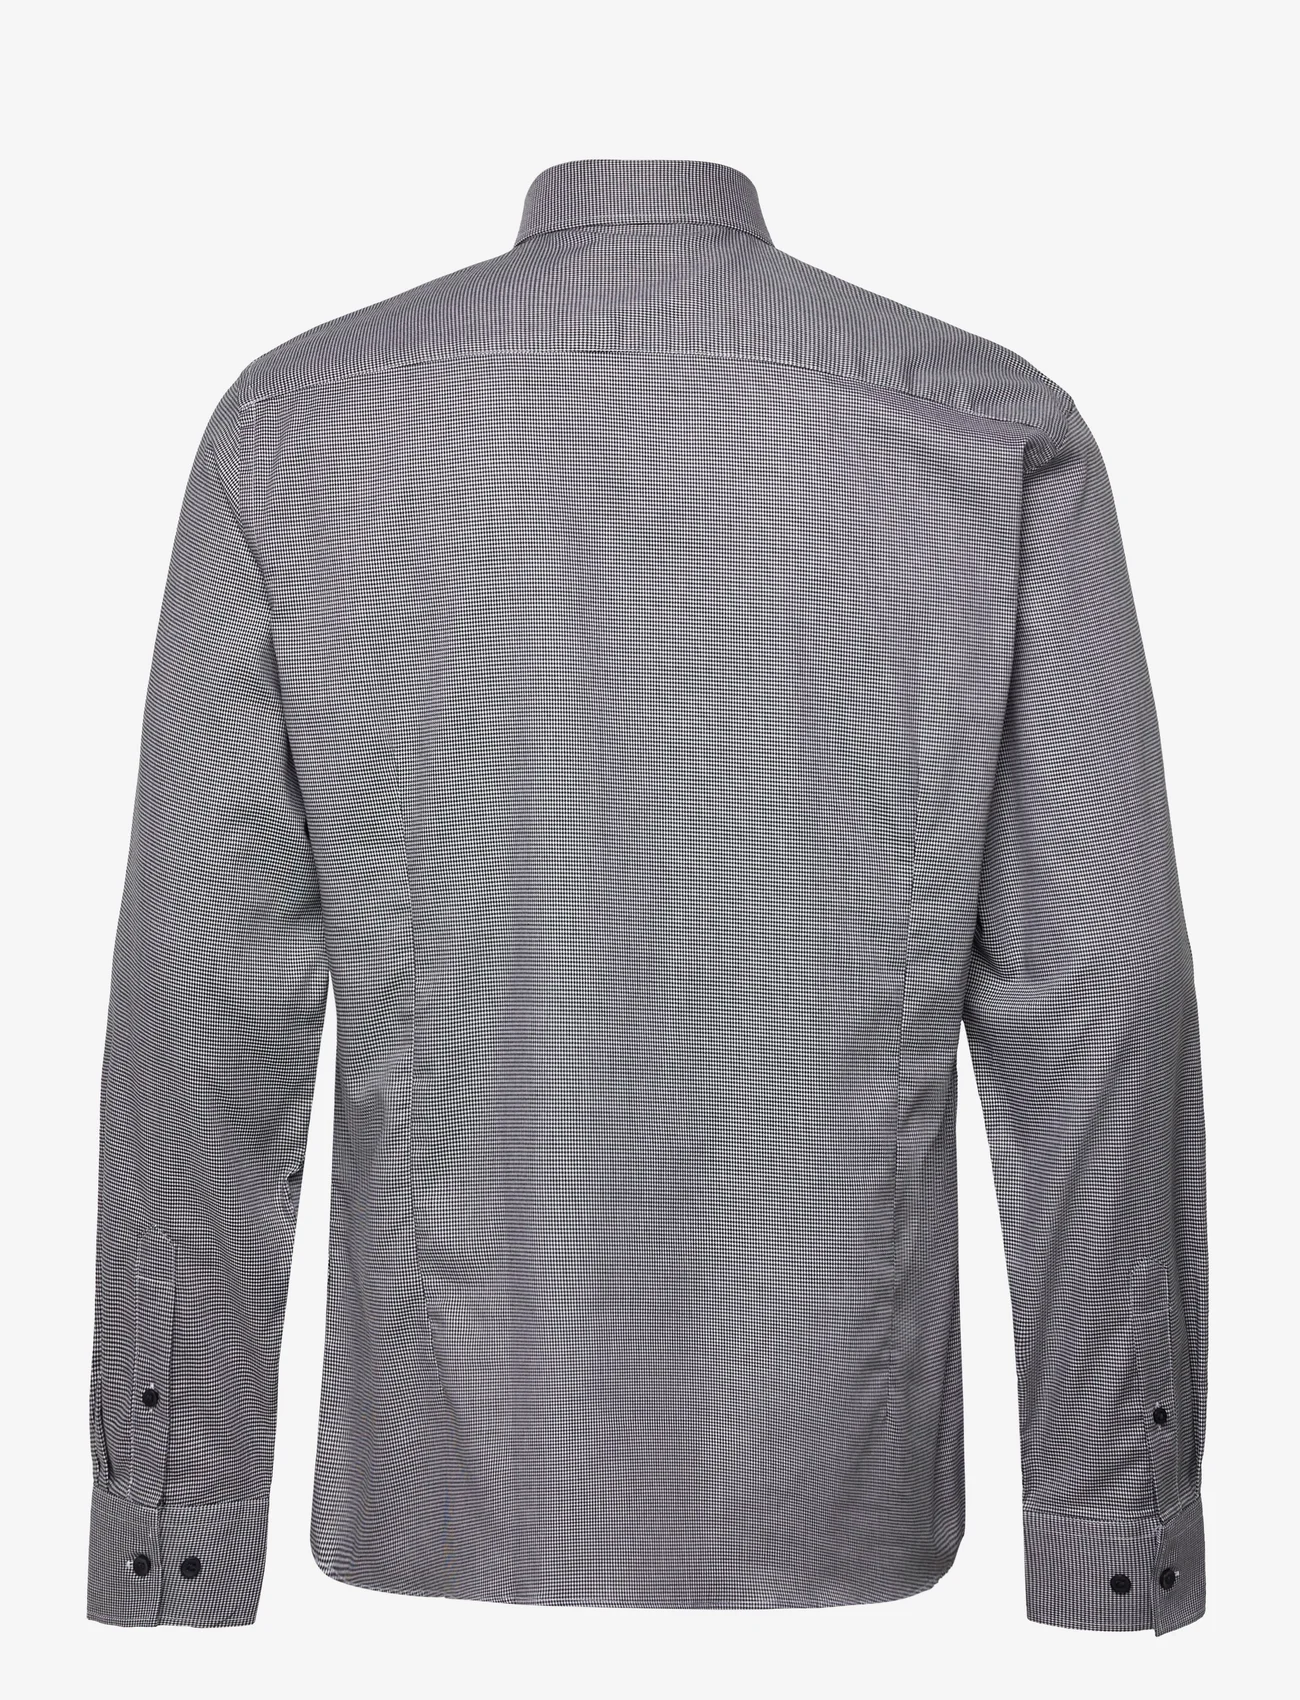 Bruun & Stengade - BS Owain Slim Fit Shirt - nordic style - grey - 1